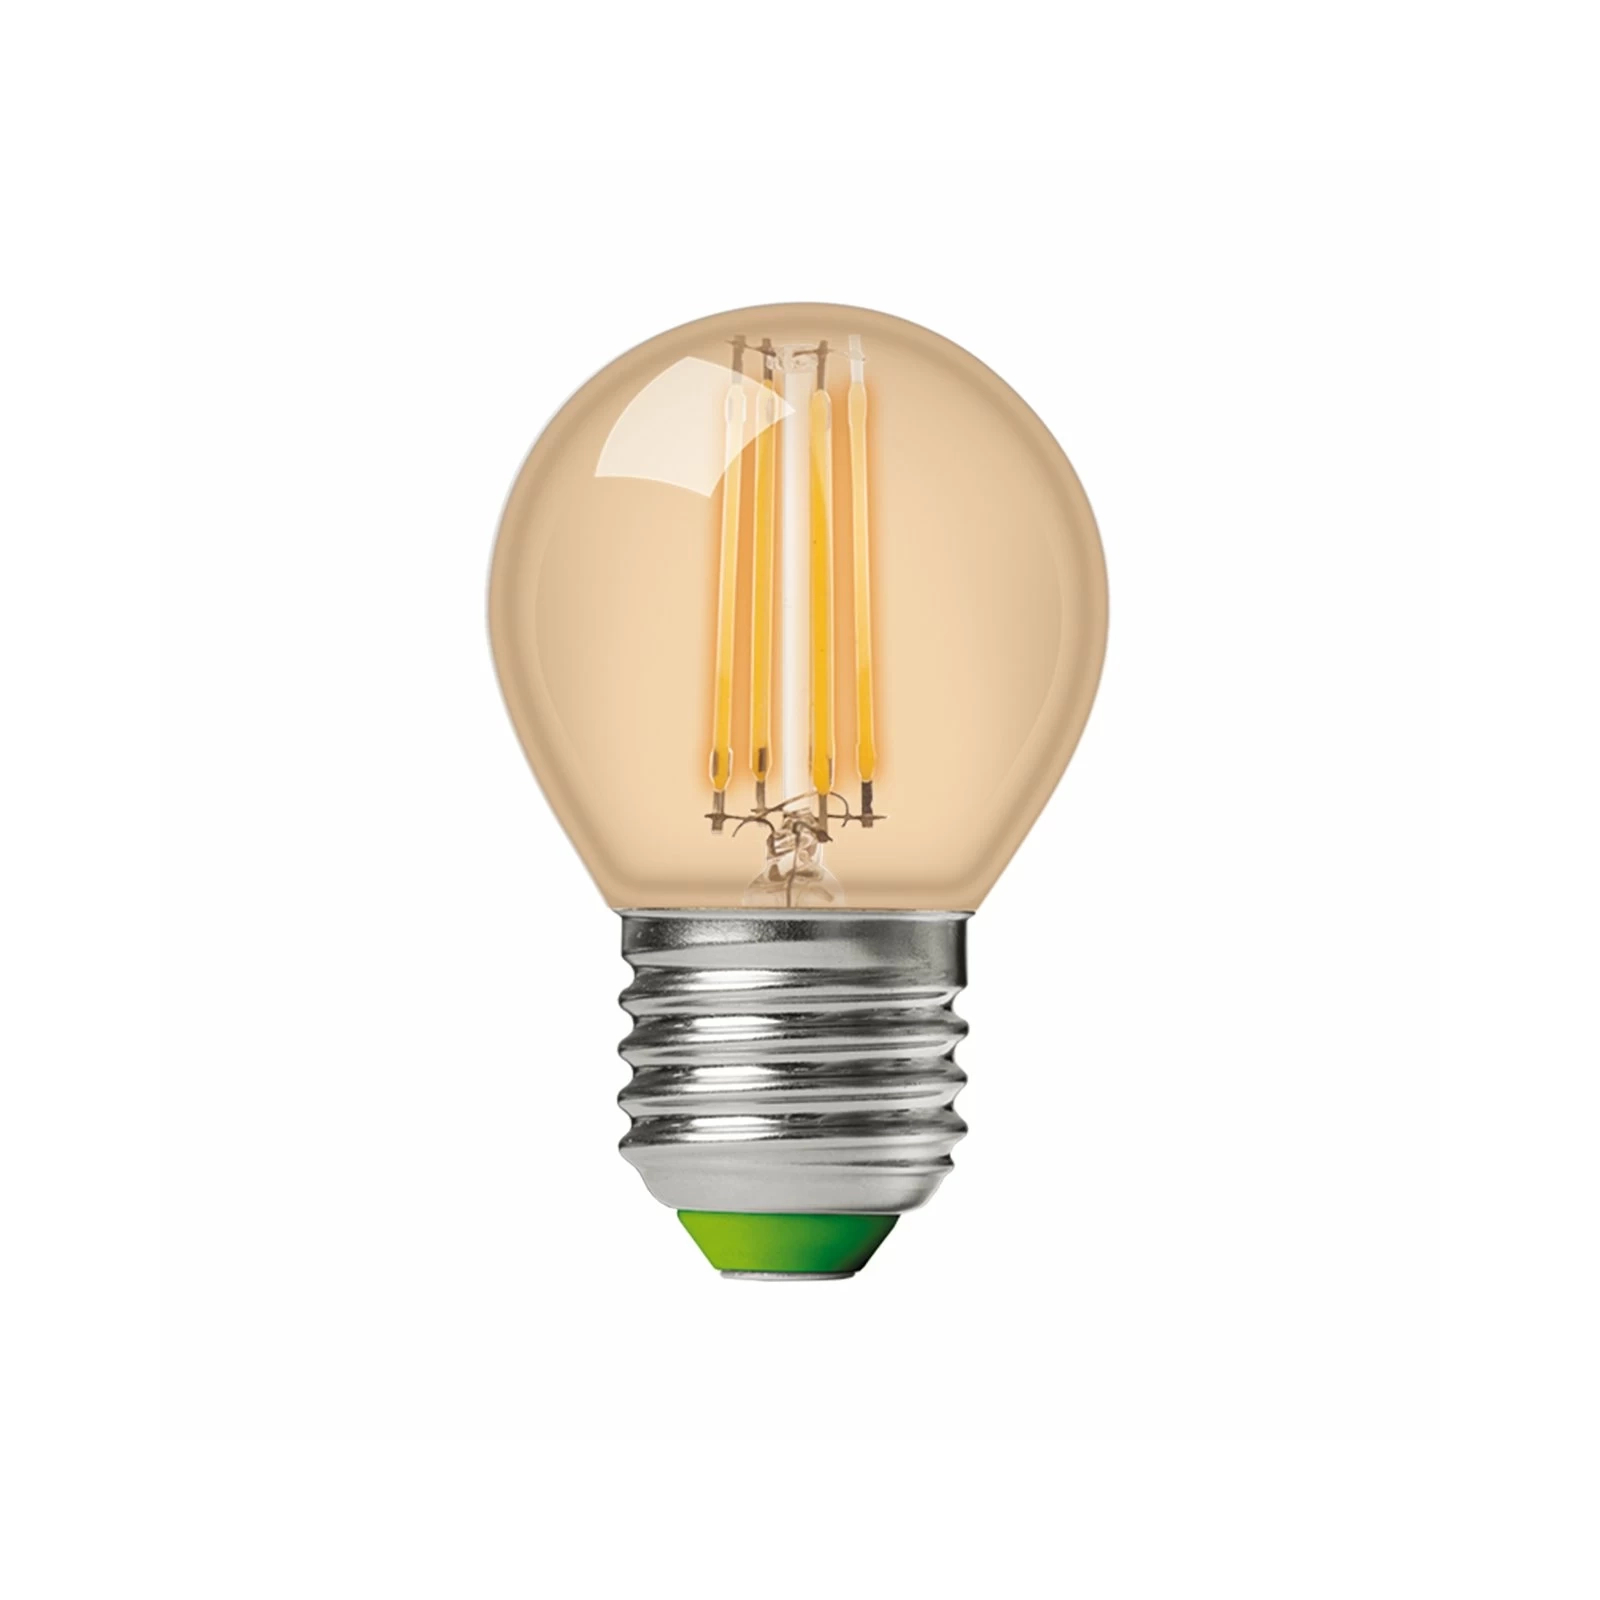 Лампочка Eurolamp LED G45 5W 530 Lm E27 3000K deco 2шт (MLP-LED-G45-05273(Amber)) зображення 2